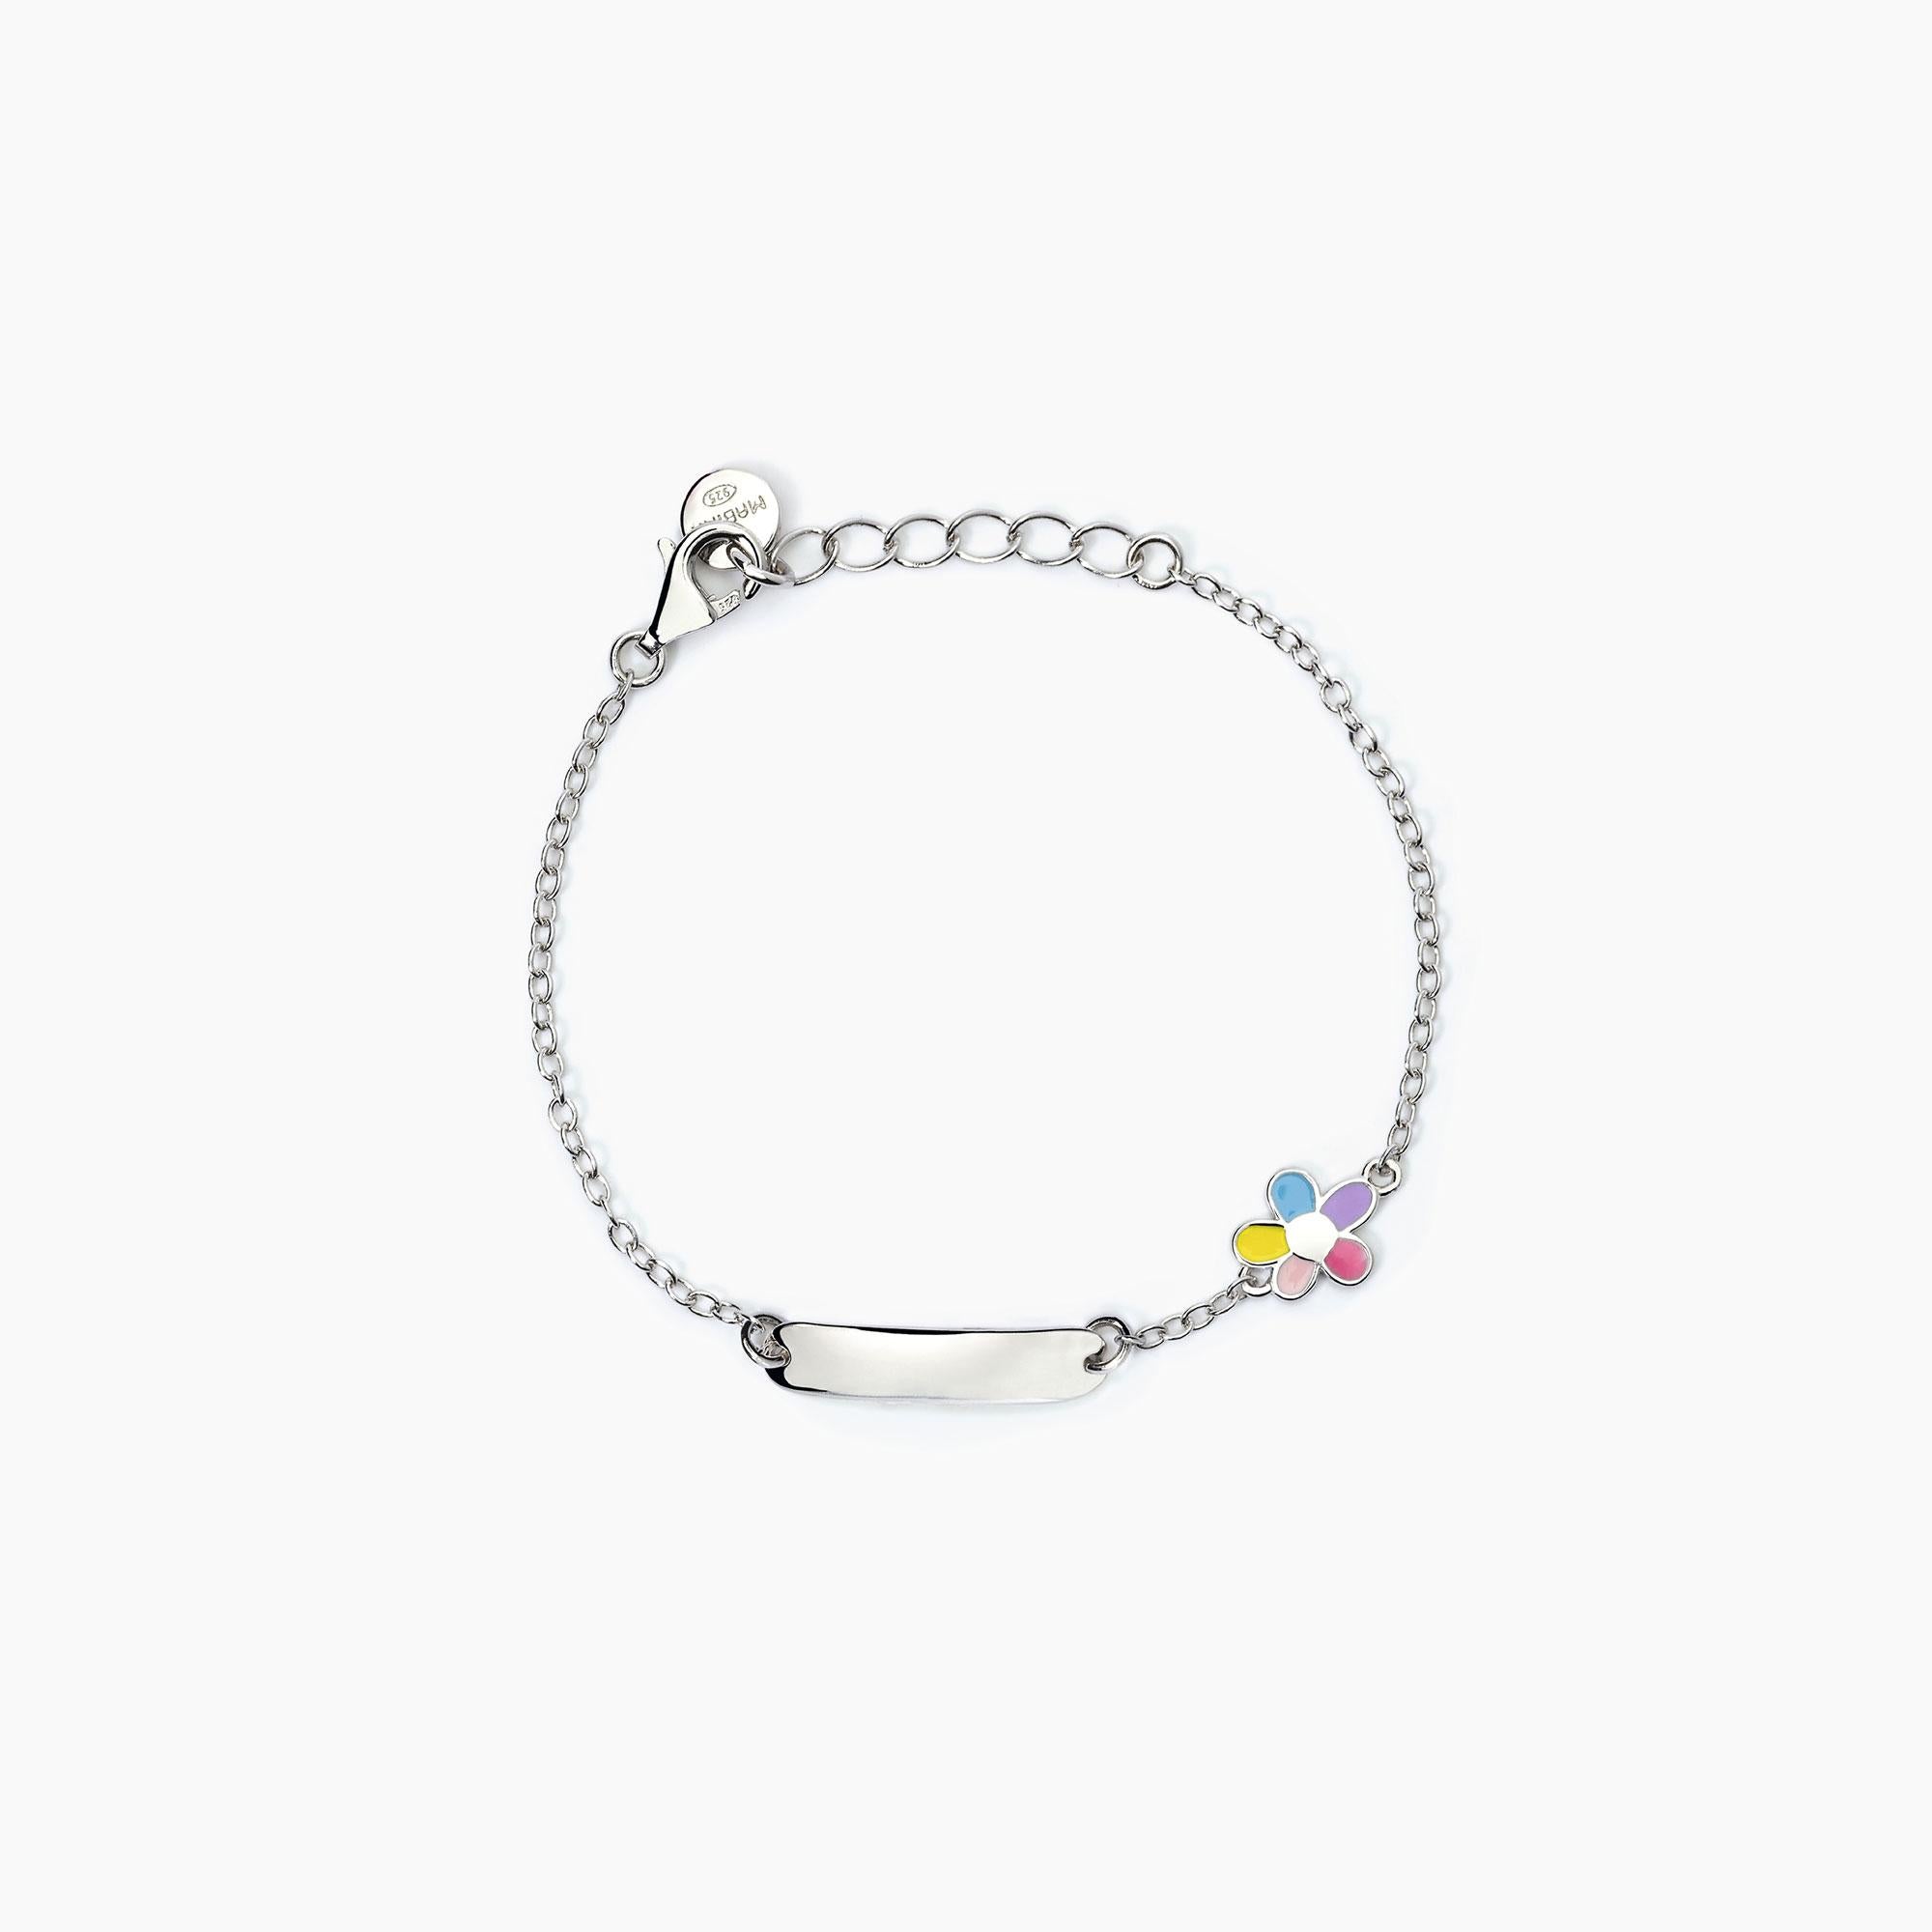 Mabina Junior - Bracelet personnalisable en argent avec fleur BLOOME - 533796